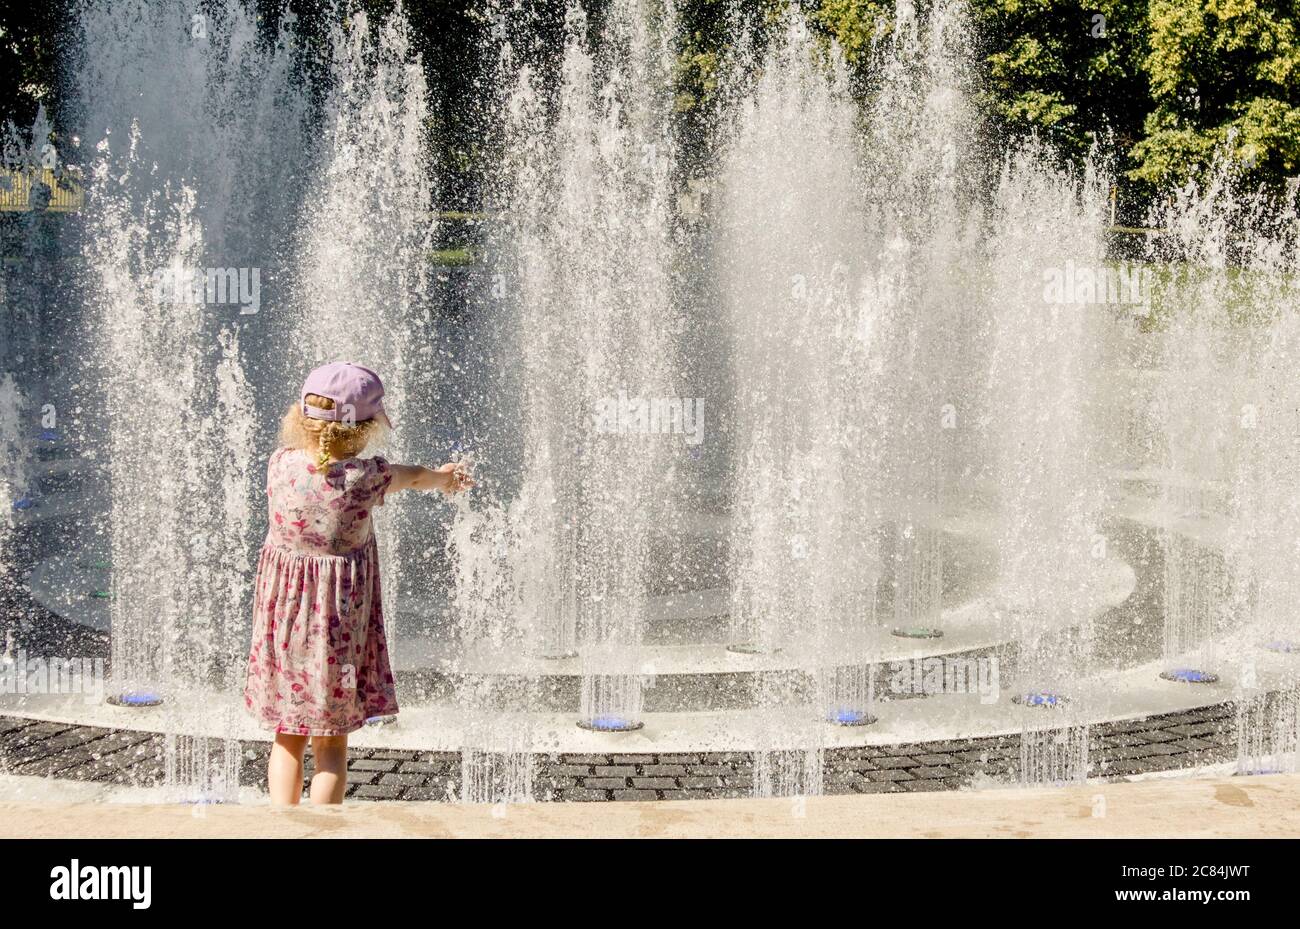 Les enfants jouent dans la fontaine d'eau dans le parc public, s'amusent par une chaude journée d'été ensoleillée. Banque D'Images